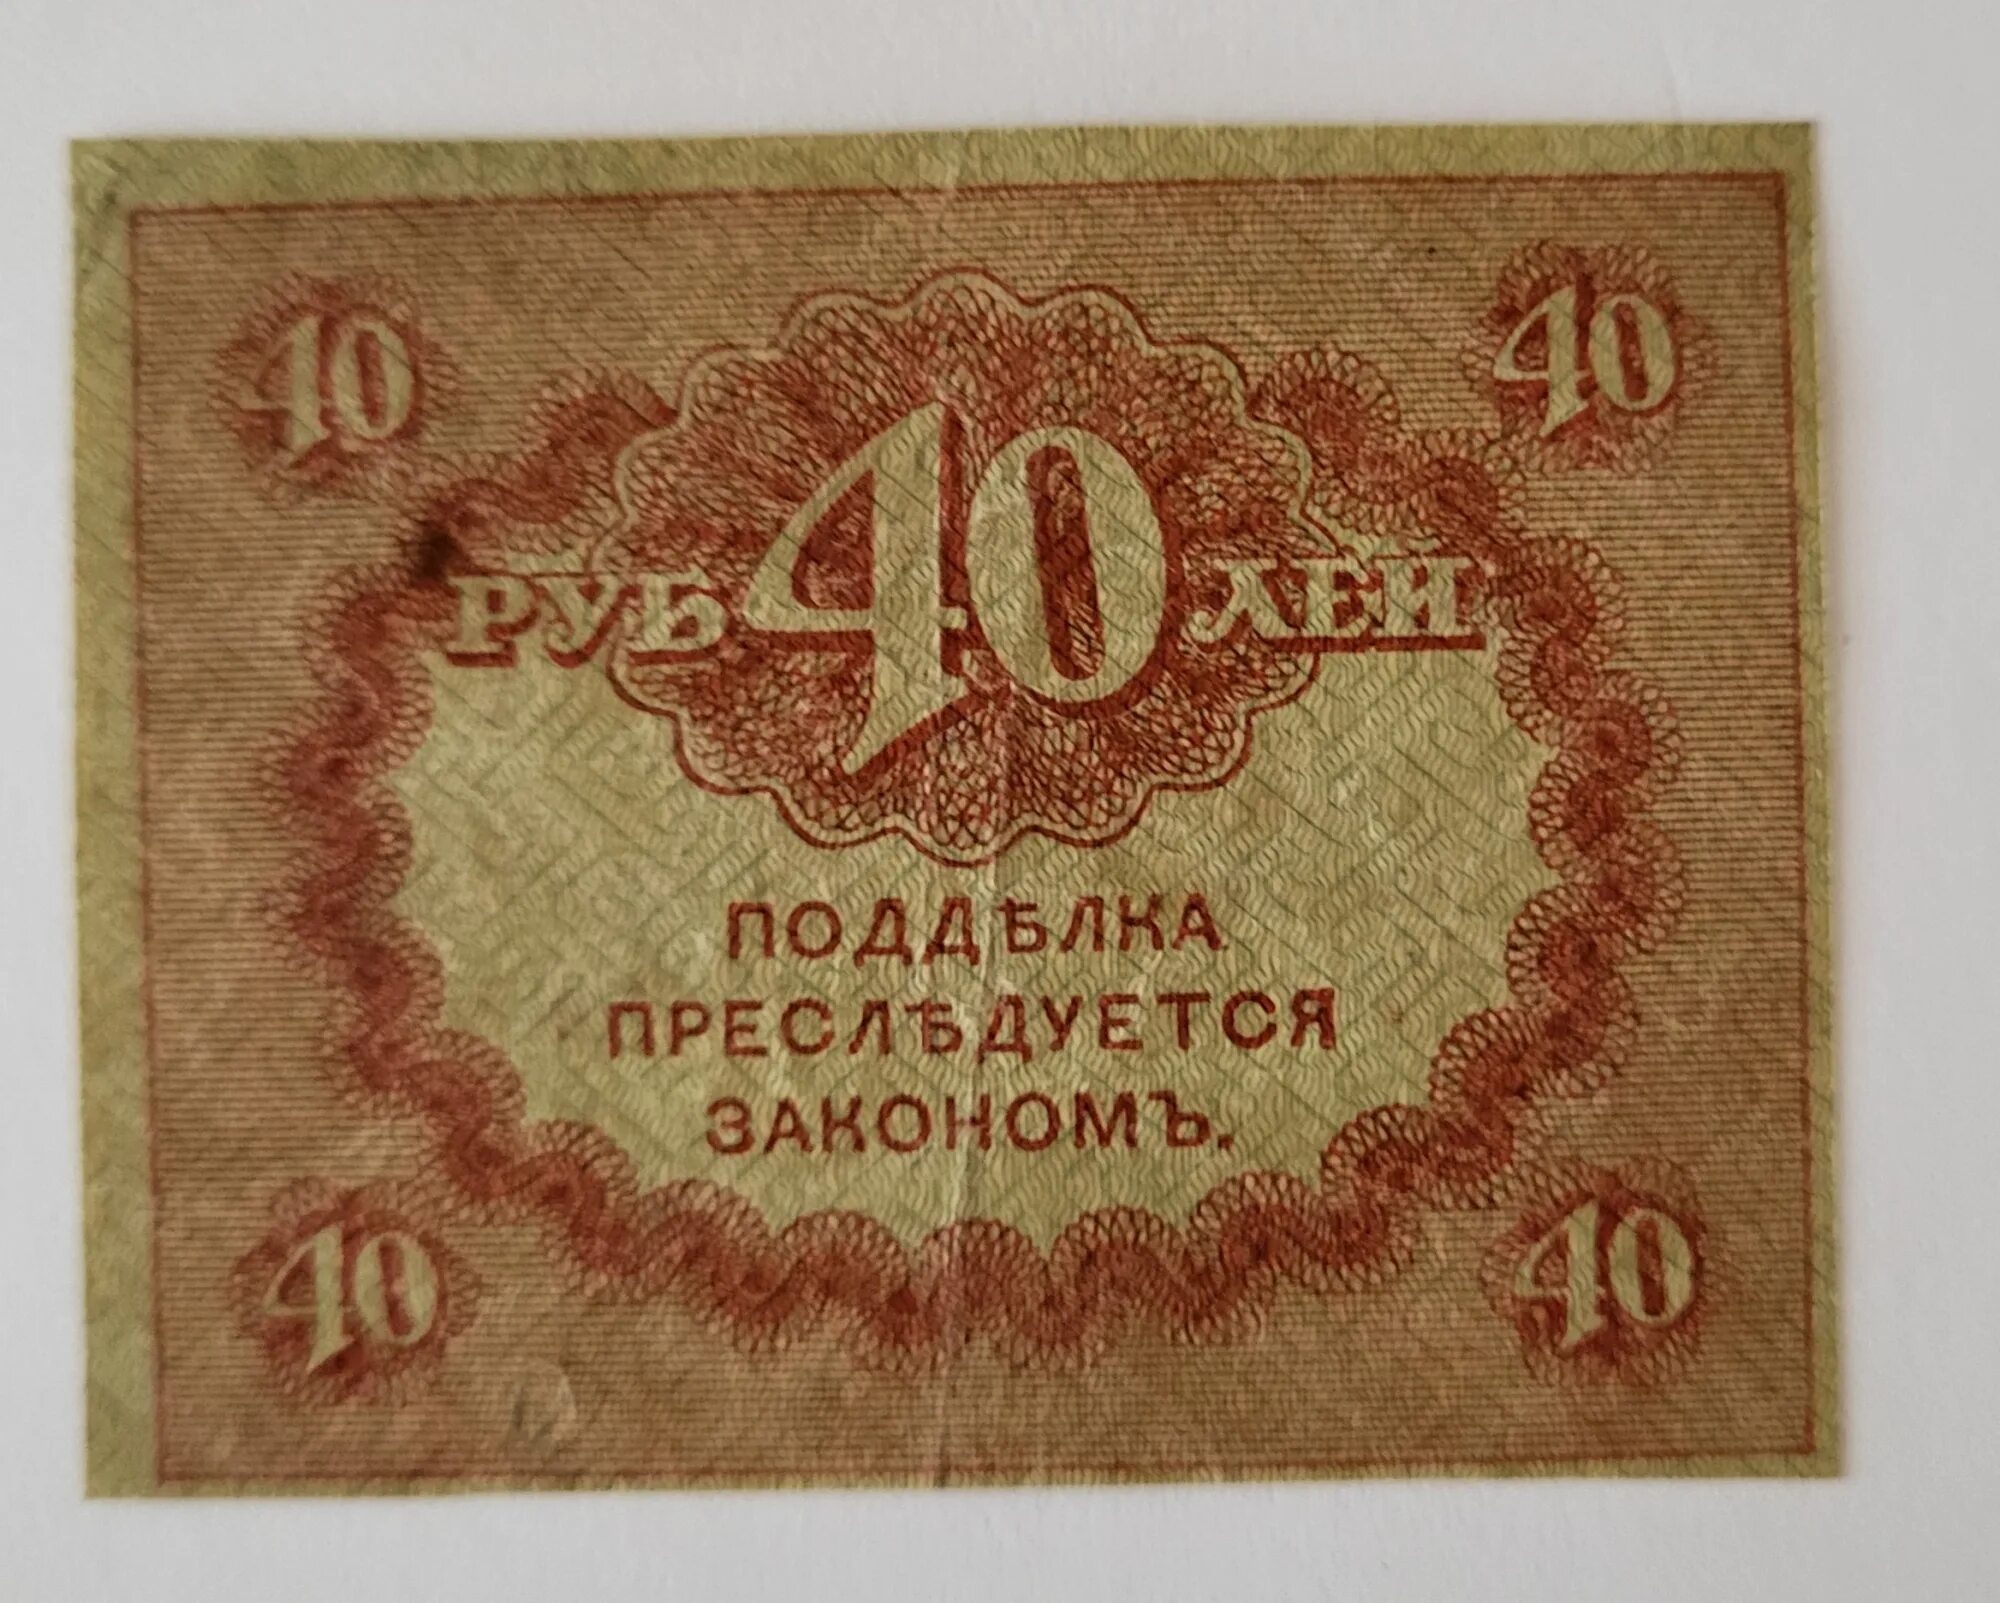 5 40 в рублях. 40 Рублей 1917. Керенка. 1 Рубль 1917 года. Купюра 40 рублей.